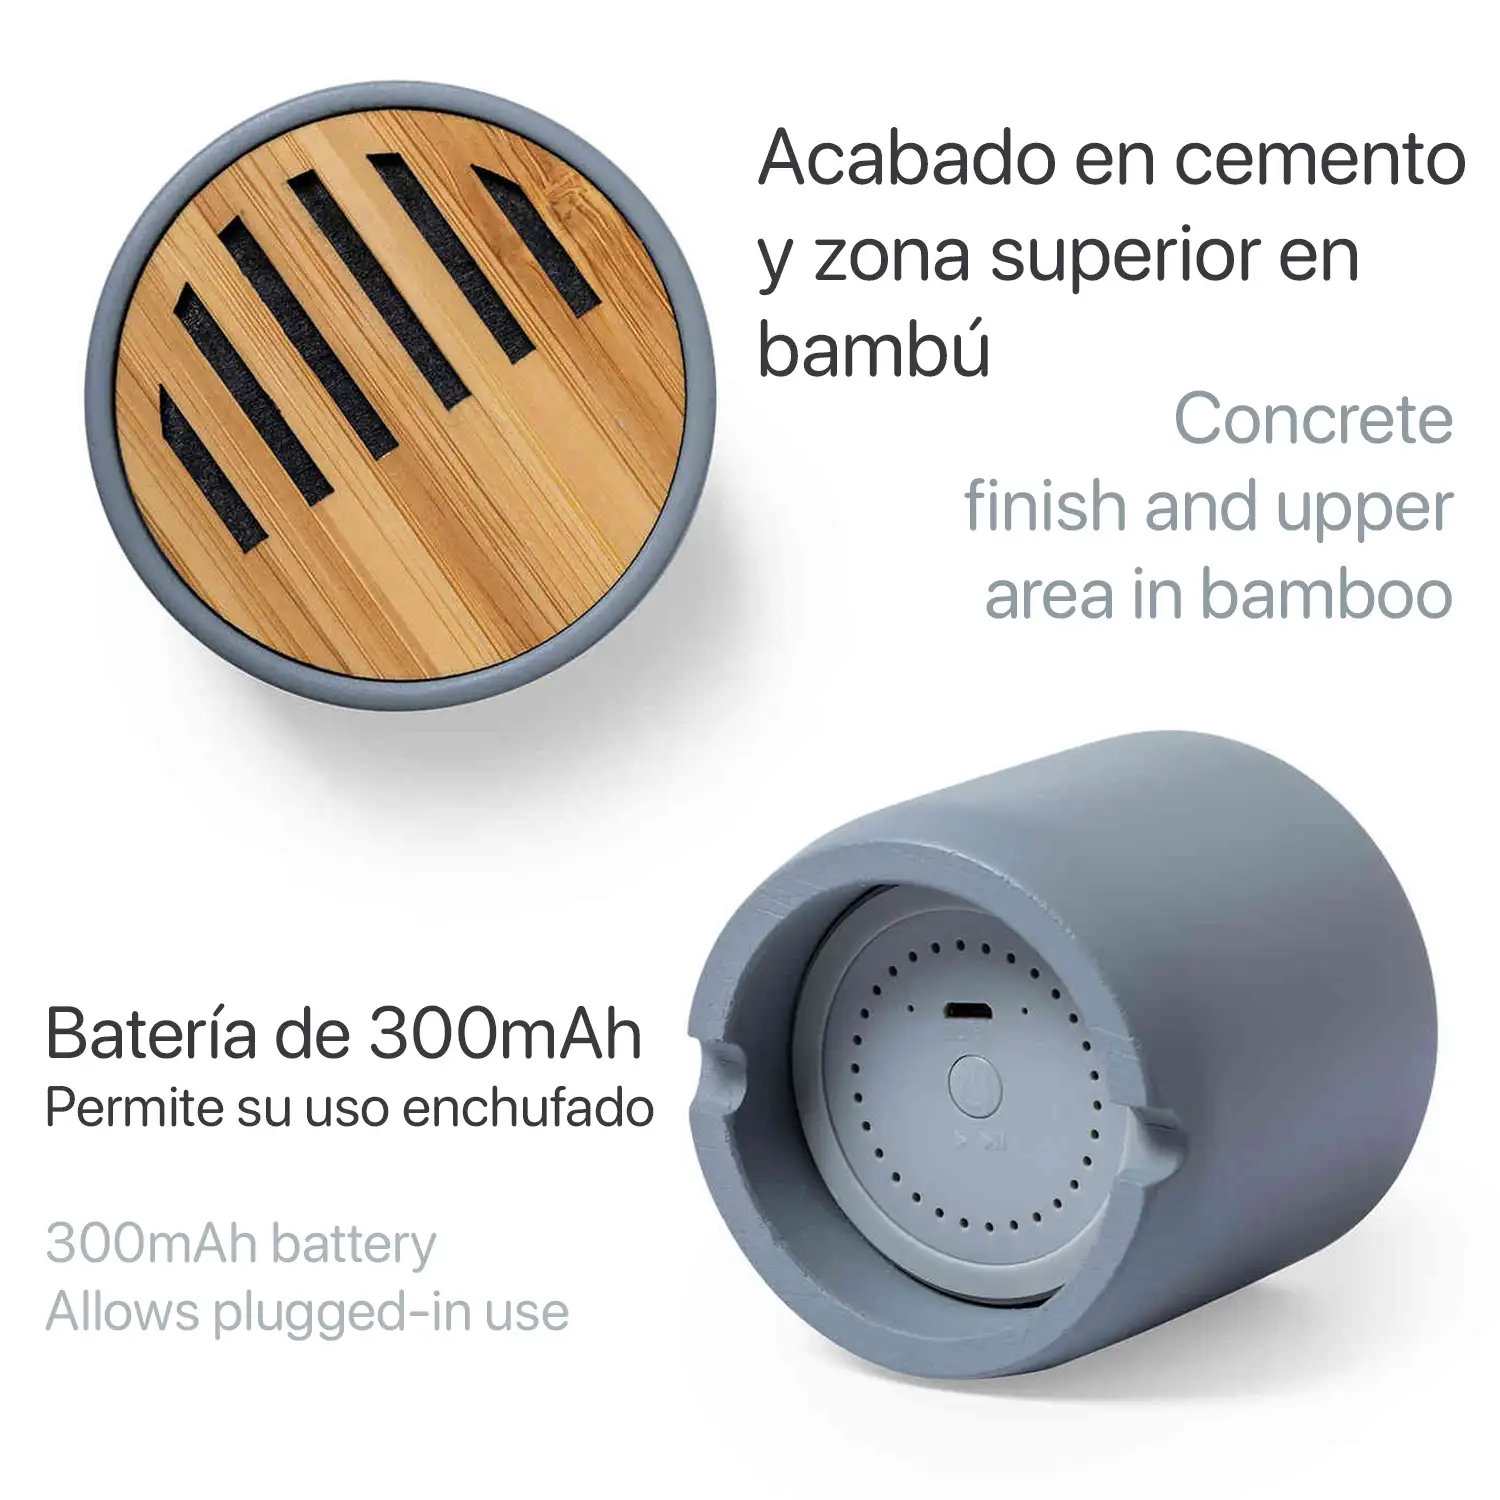 Altavoz Piler Bluetooth 5.0 fabricado en cemento y bambú. Tamaño compacto, 3W.